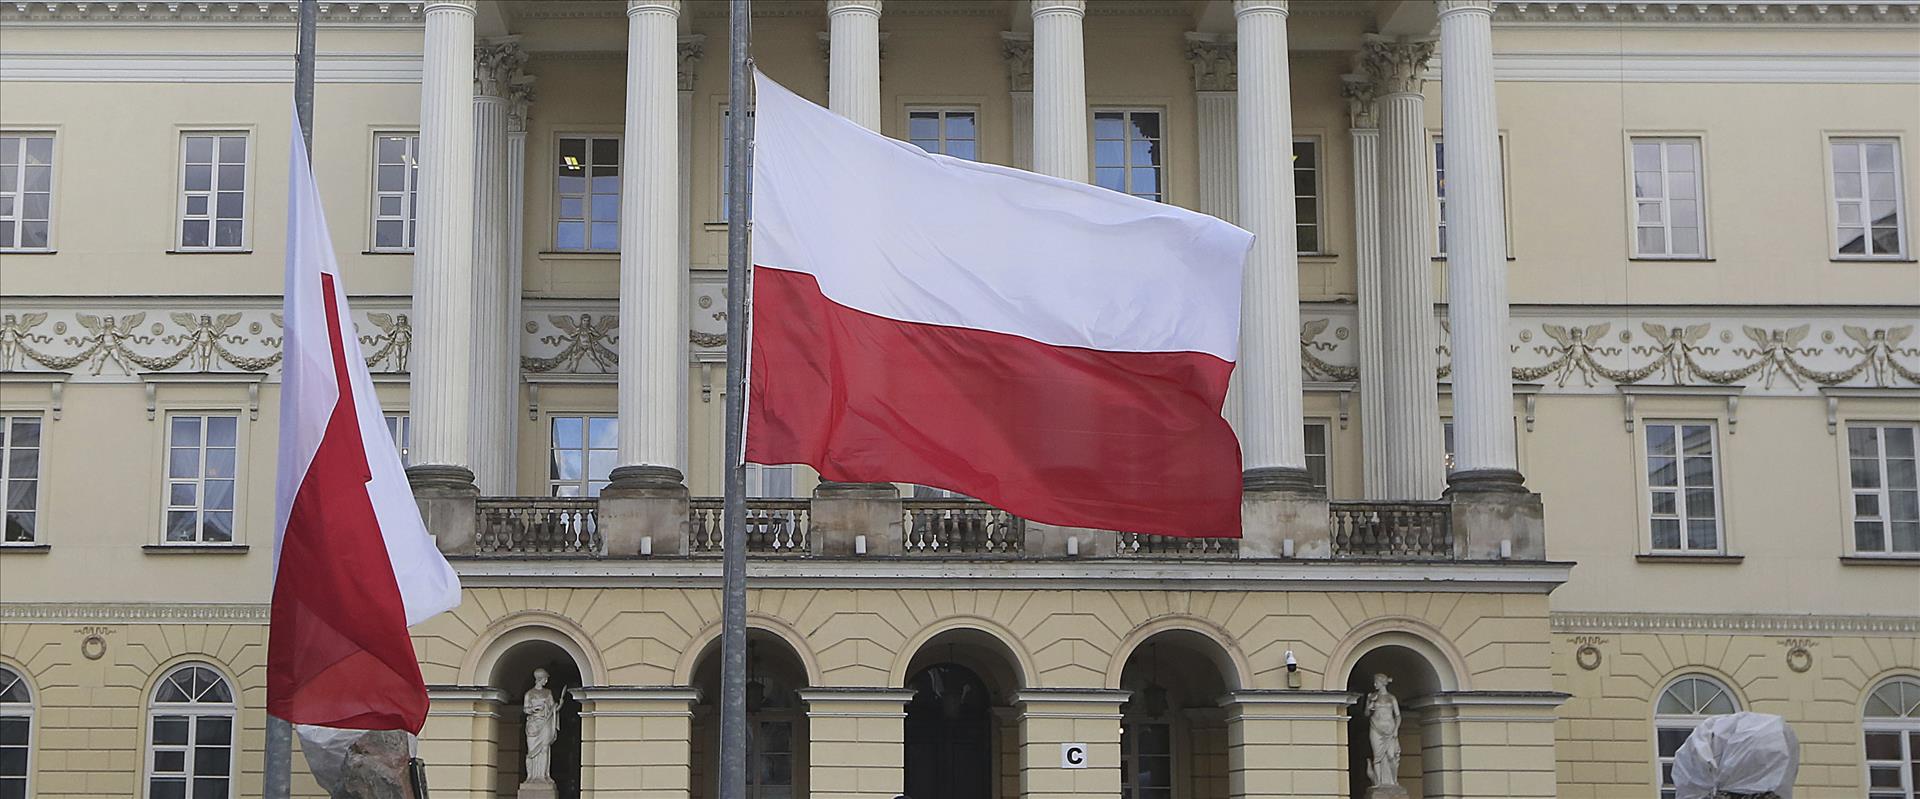 דגל פולין בבניין העירייה בוורשה